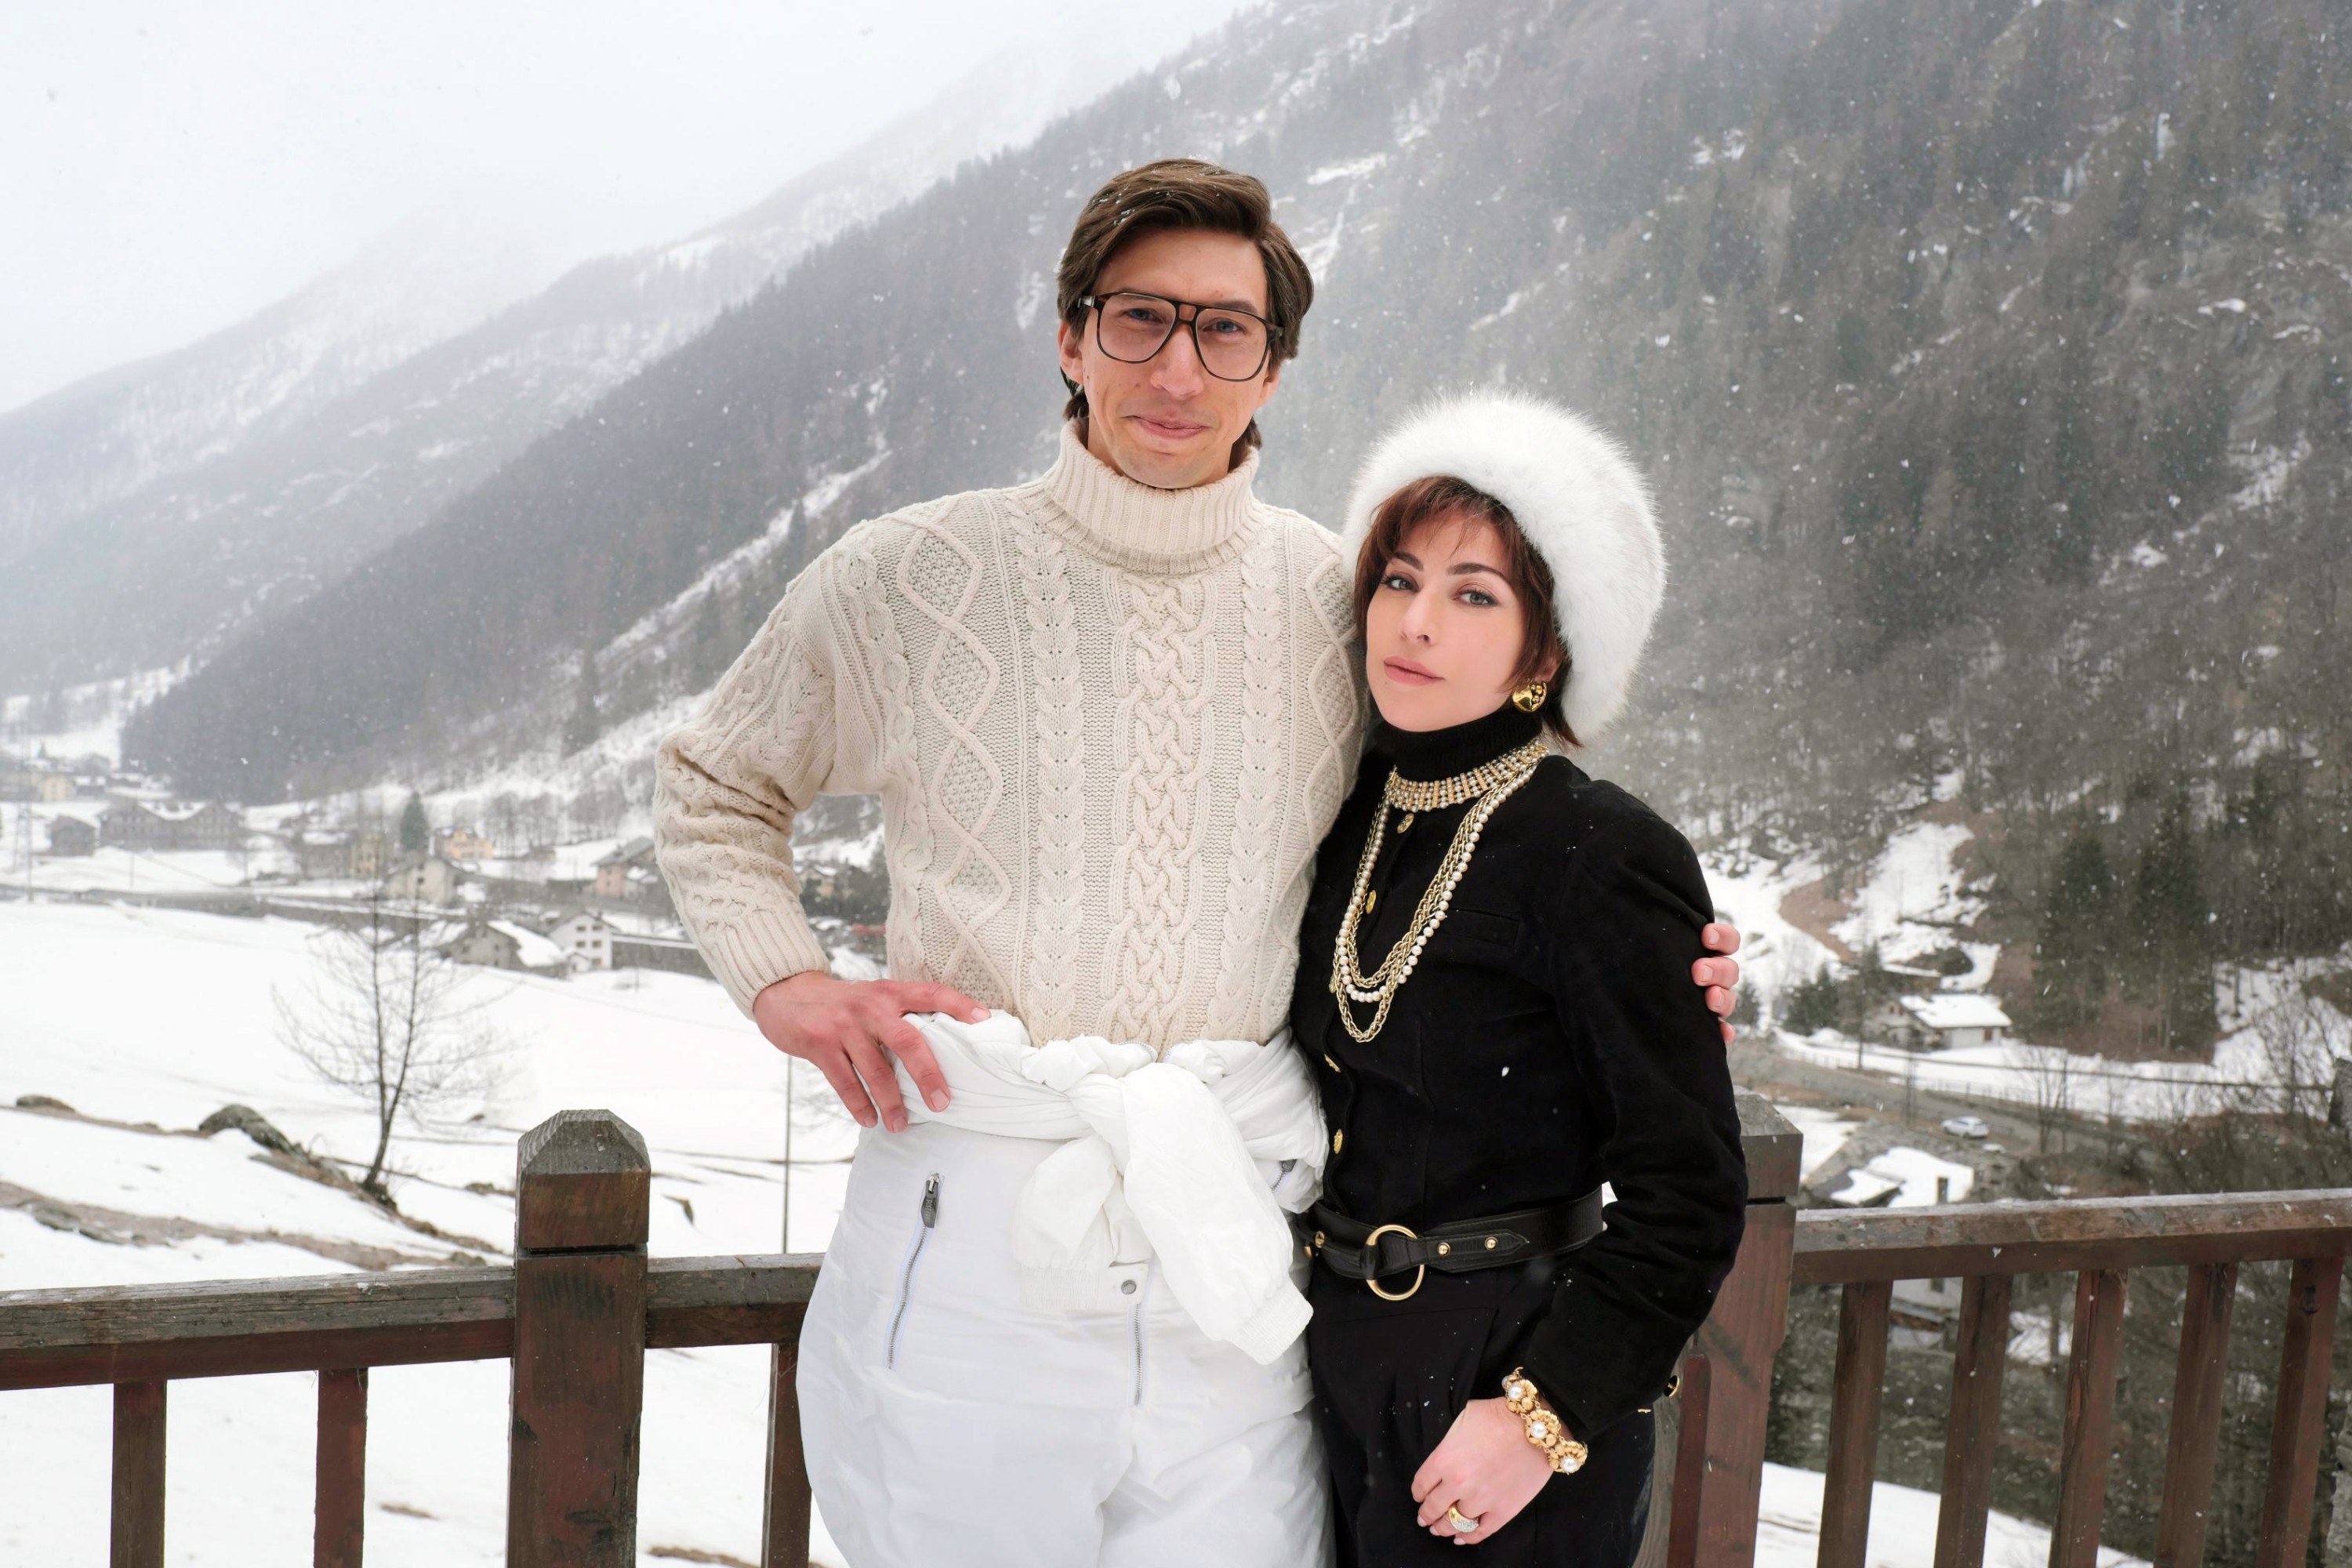 Adam Driver and Lady Gaga at a ski resort